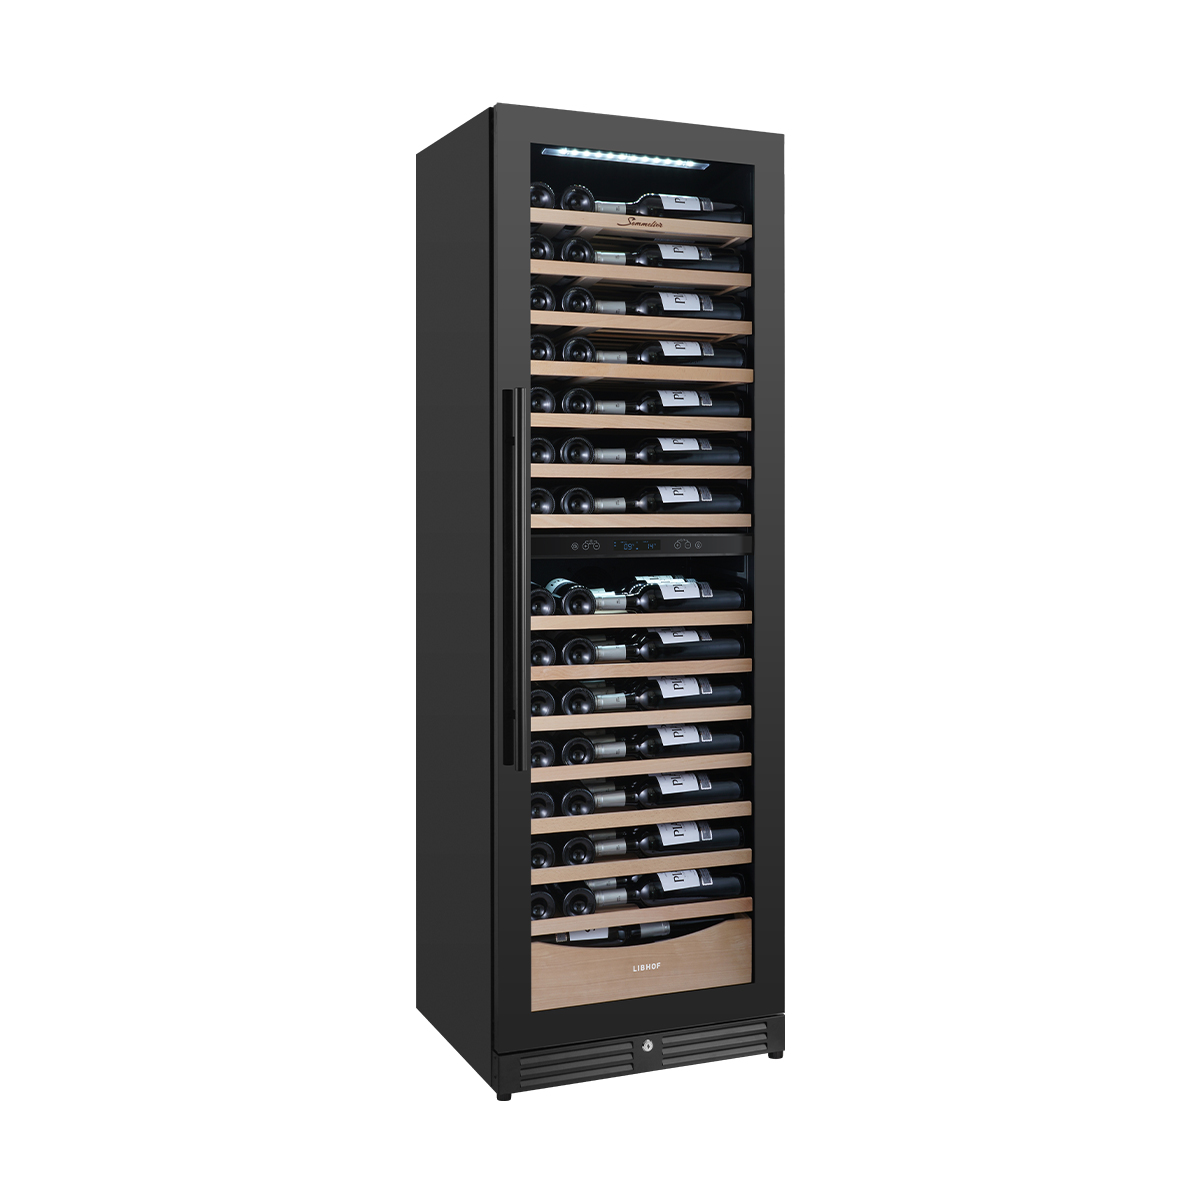 Винный шкаф двухзонный компрессорный Libhof Sommelier SMD-110 Slim Black 595х550х1800мм на 110 бутылок черный встраиваемый/отдельностоящий